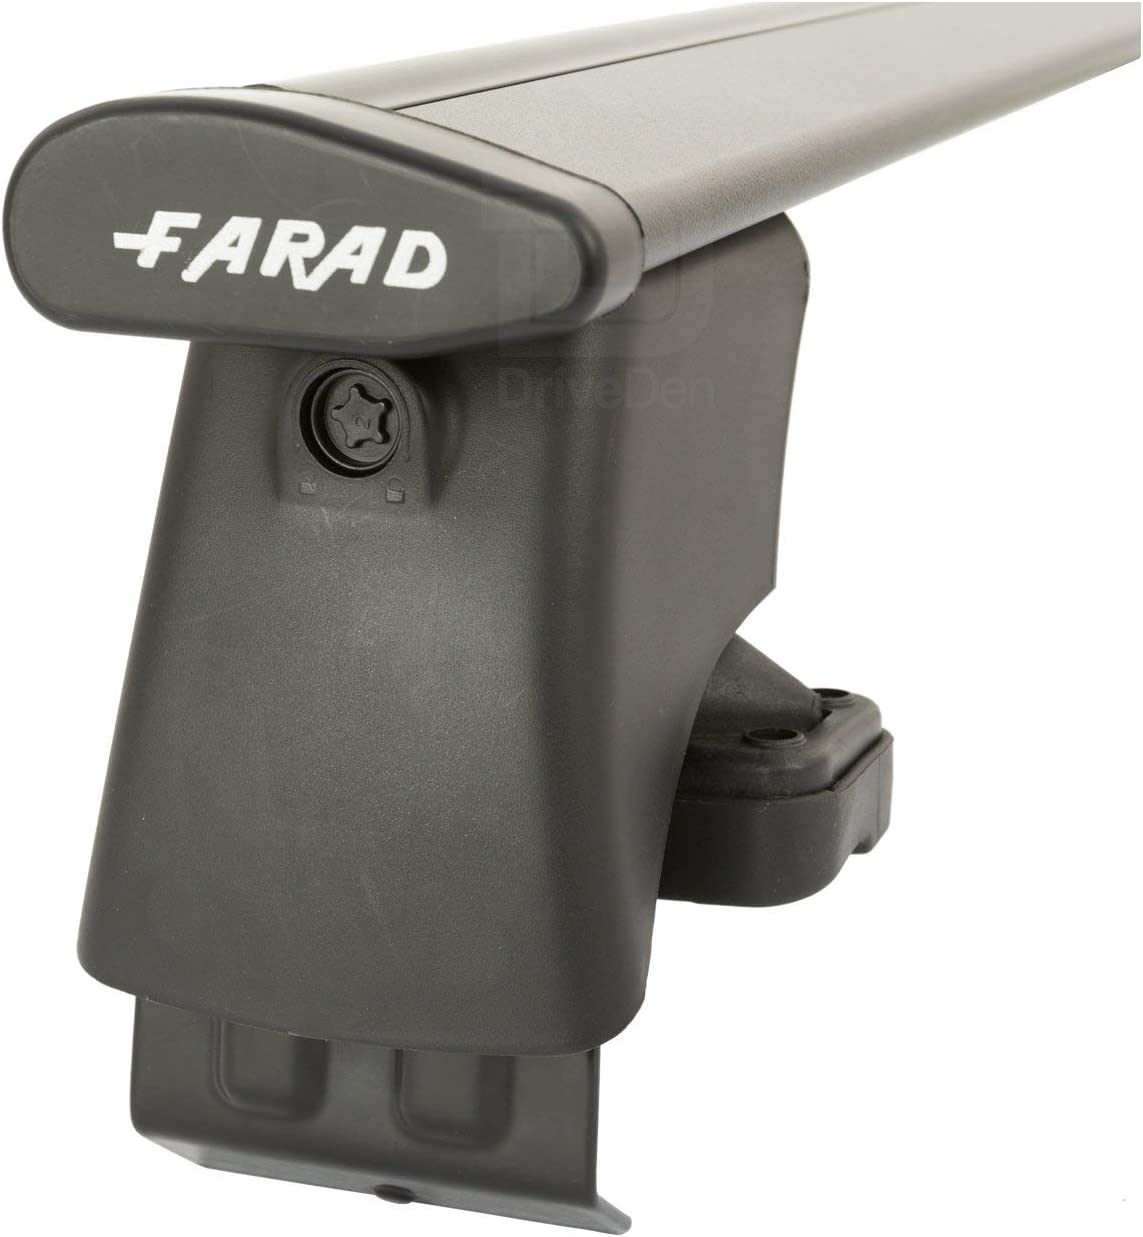 FARAD-Kit H2 per barre portatutto - Nissan Pixo 2009-2014 (senza corrimano)